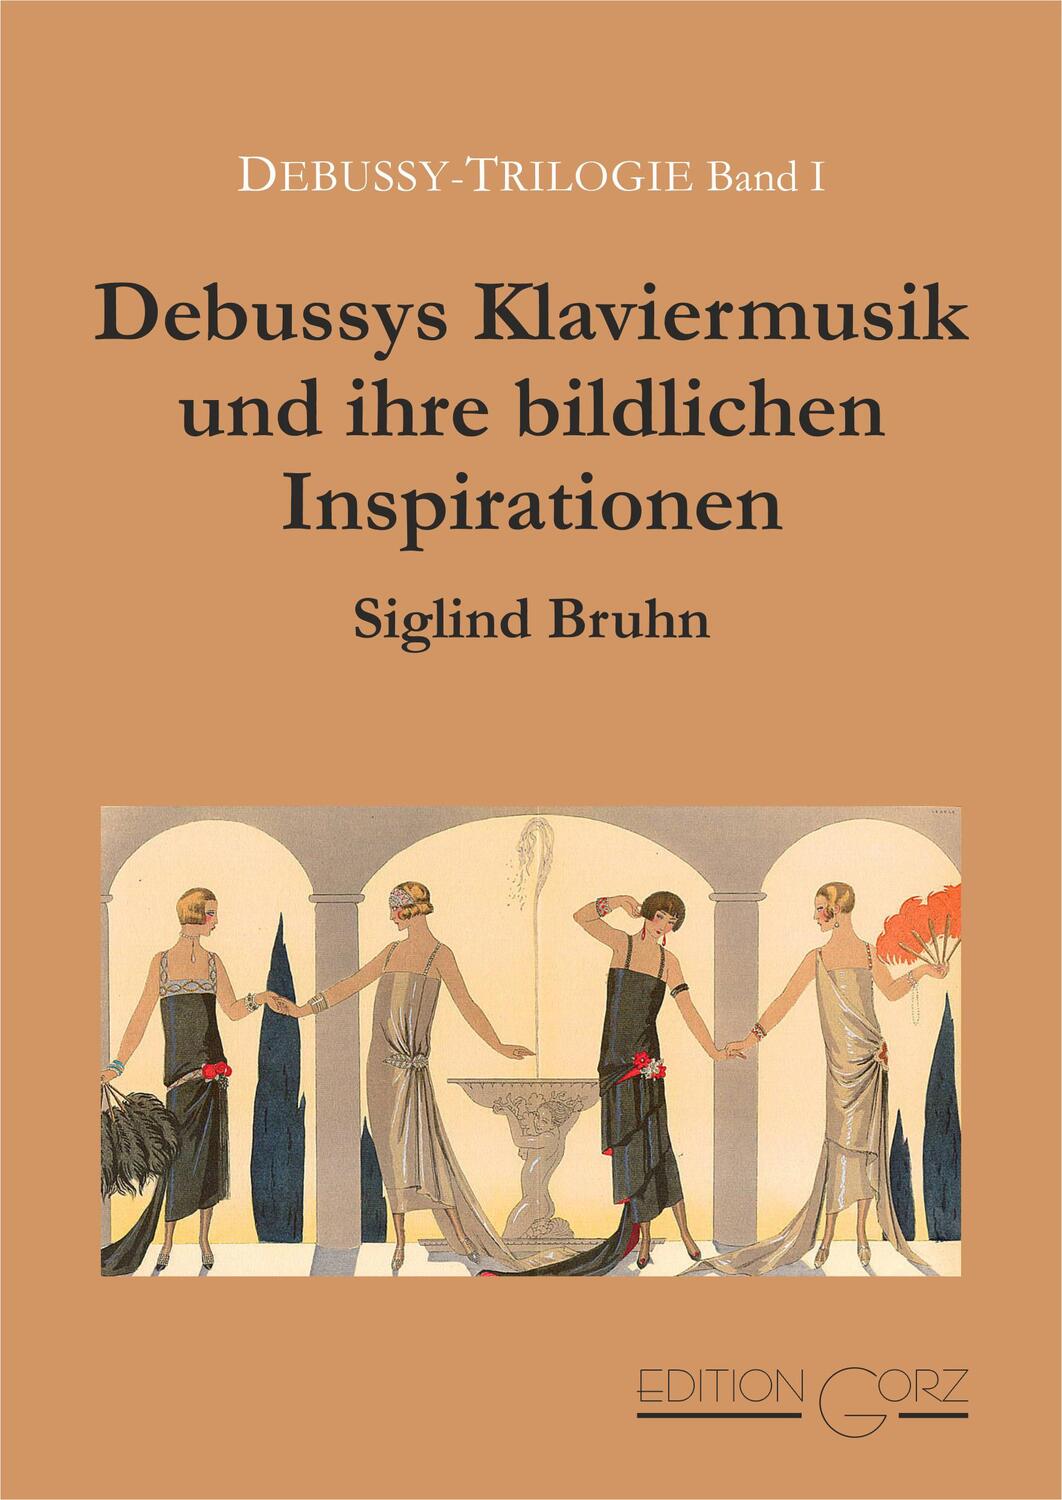 Debussys Klaviermusik und ihre bildlichen Inspirationen - Bruhn, Siglind